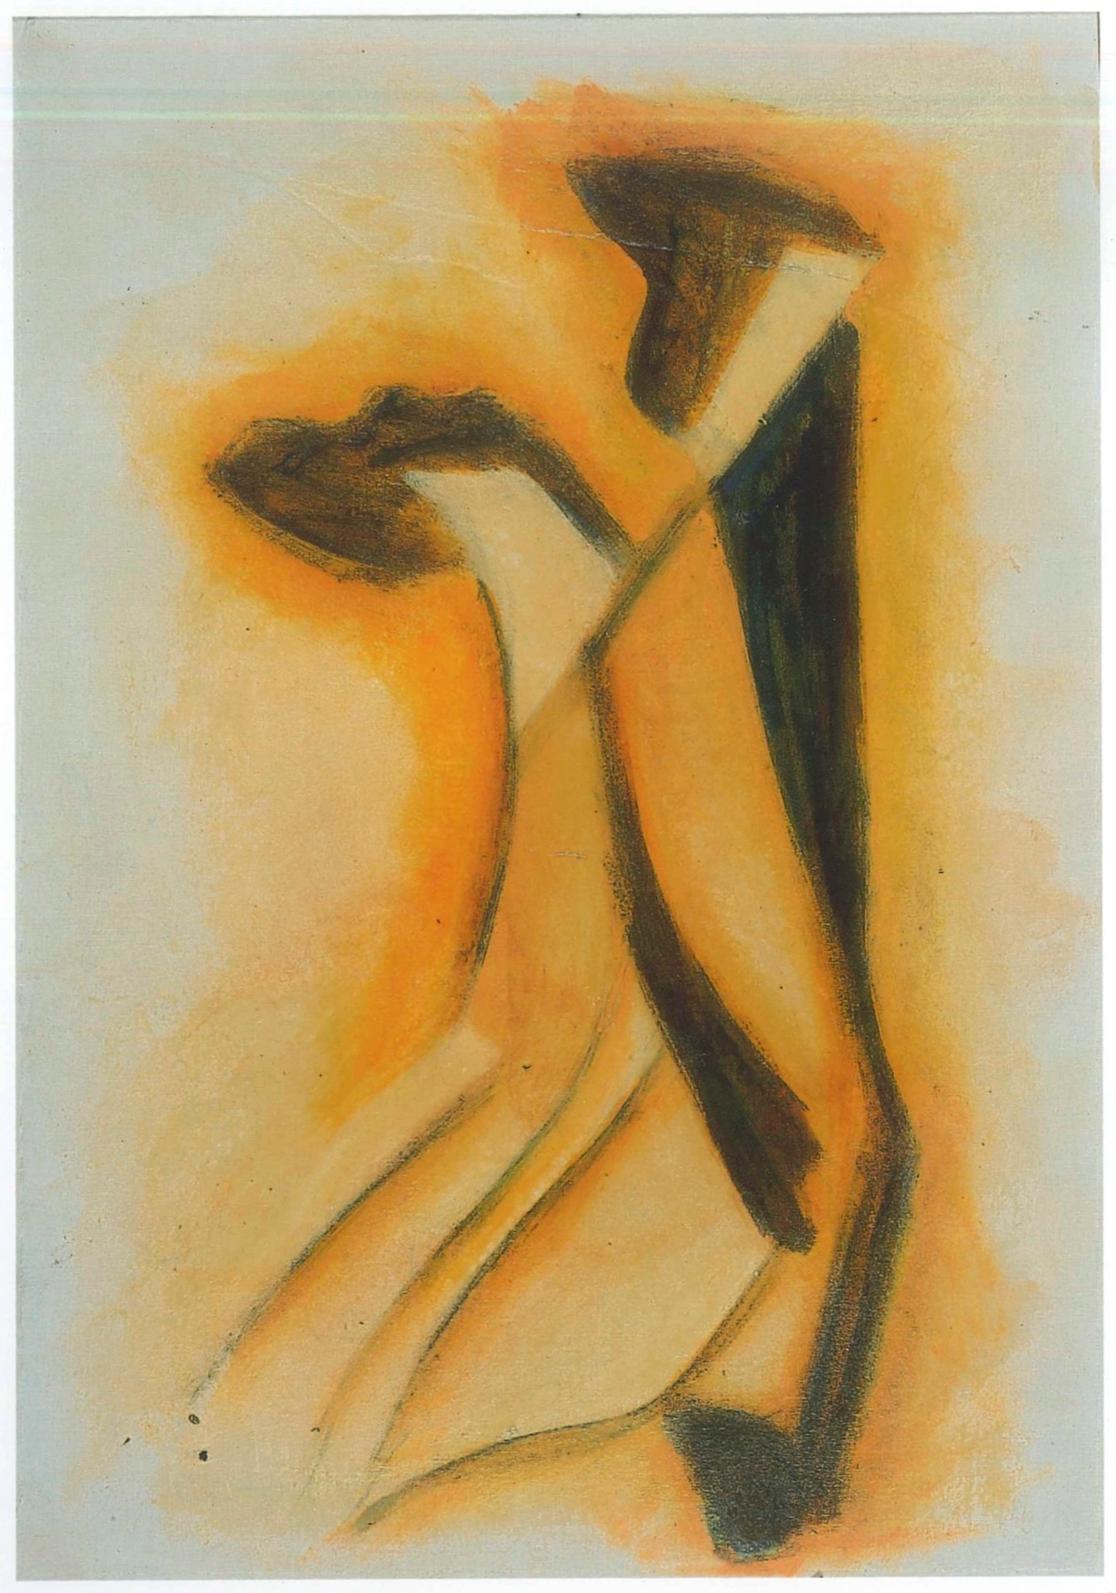 Abstrakter Expressionismus ist ein Originalkunstwerk von Giorgio Lo Fermo aus dem Jahr 2011.

Öl auf Leinwand.

Dieses zeitgenössische Kunstwerk wurde 2011 realisiert und stellt eine abstrakte Komposition dar, bei der der Künstler wunderbare Gelb-